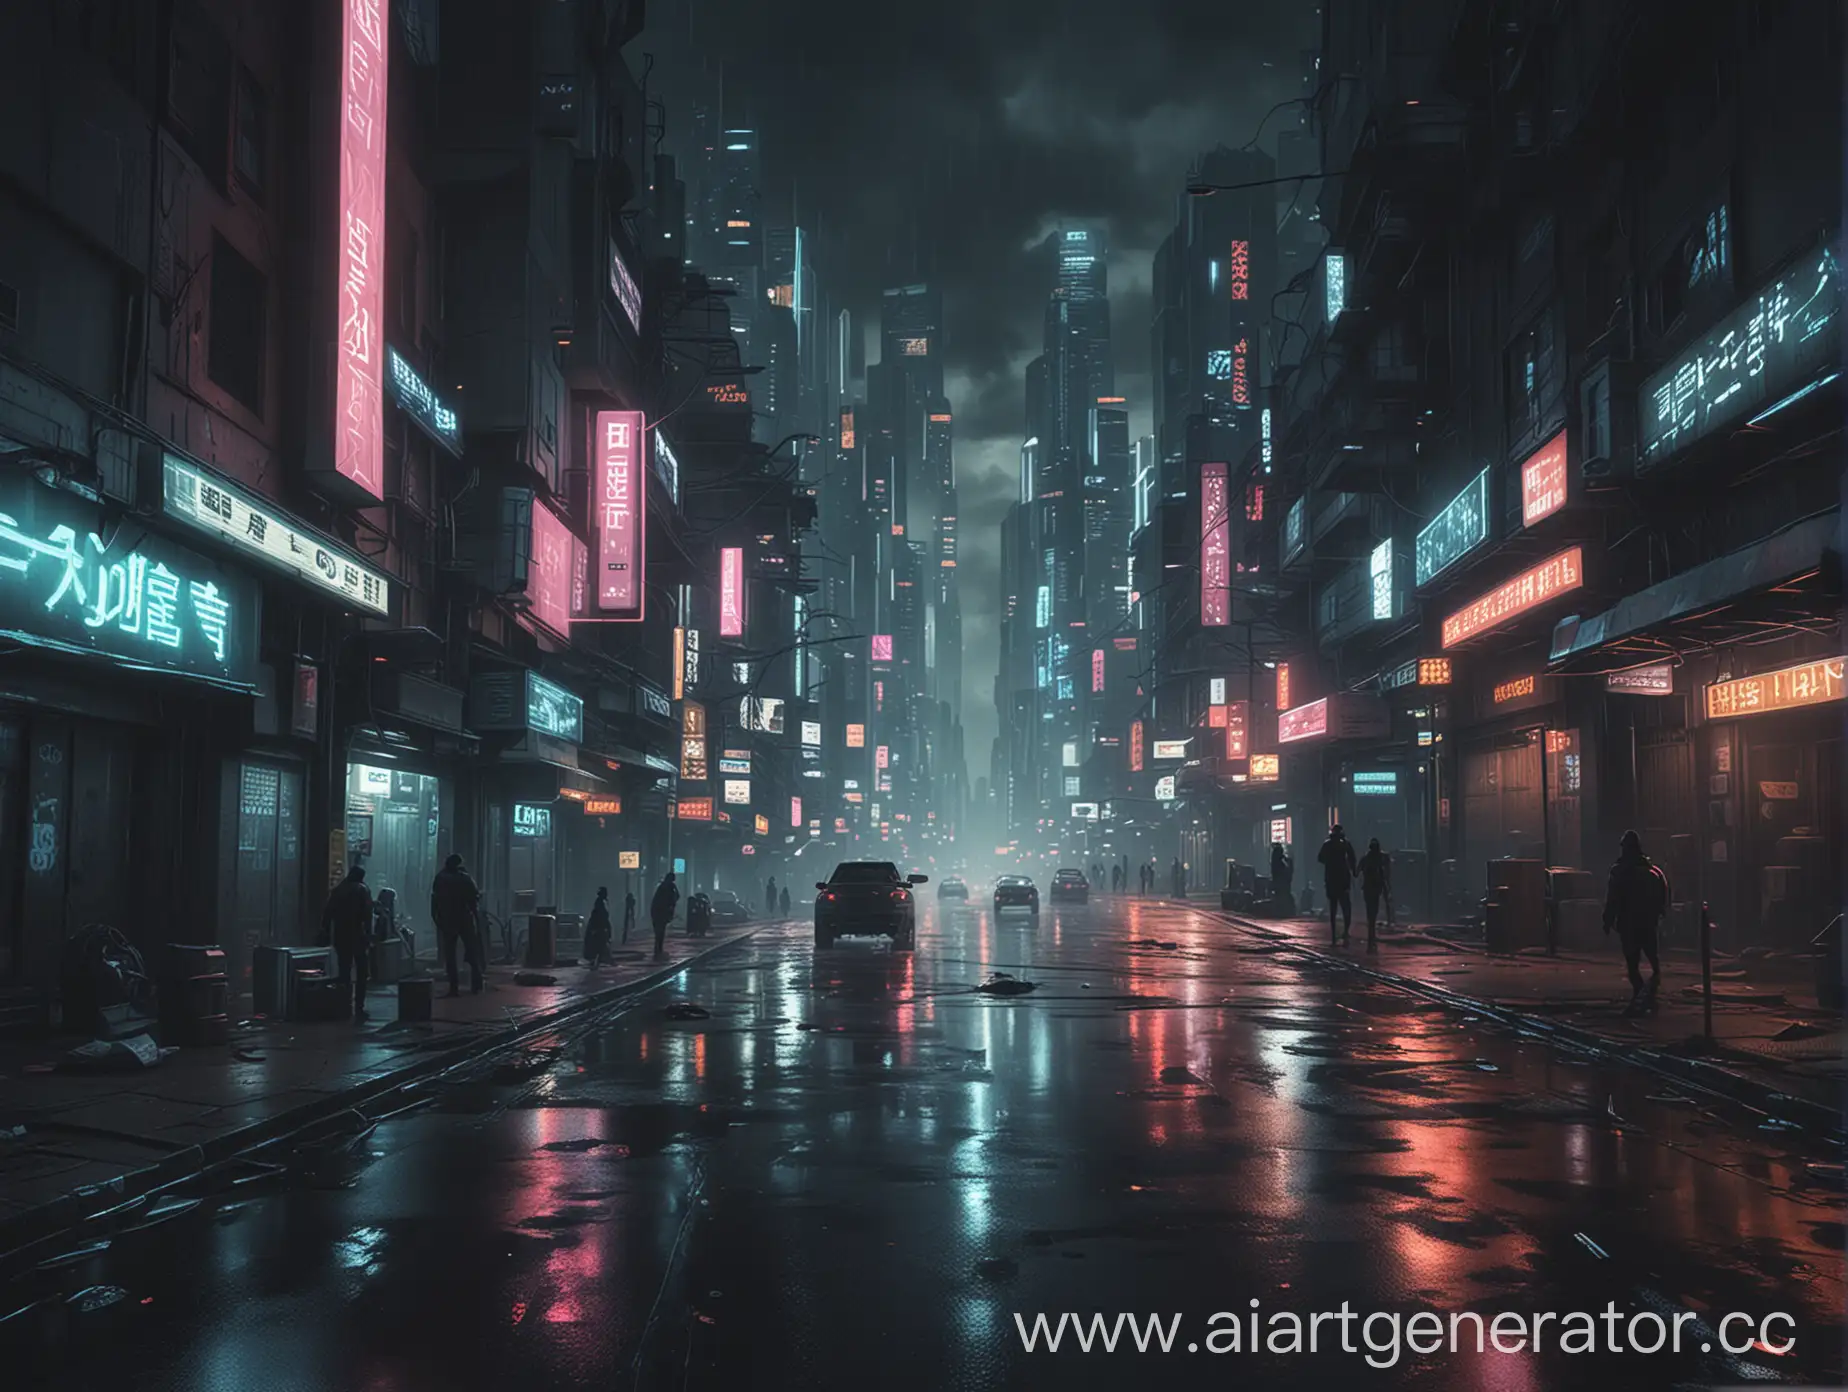 Urban-Transformation-Cityscape-Evolving-into-Cyberpunk-Dystopia